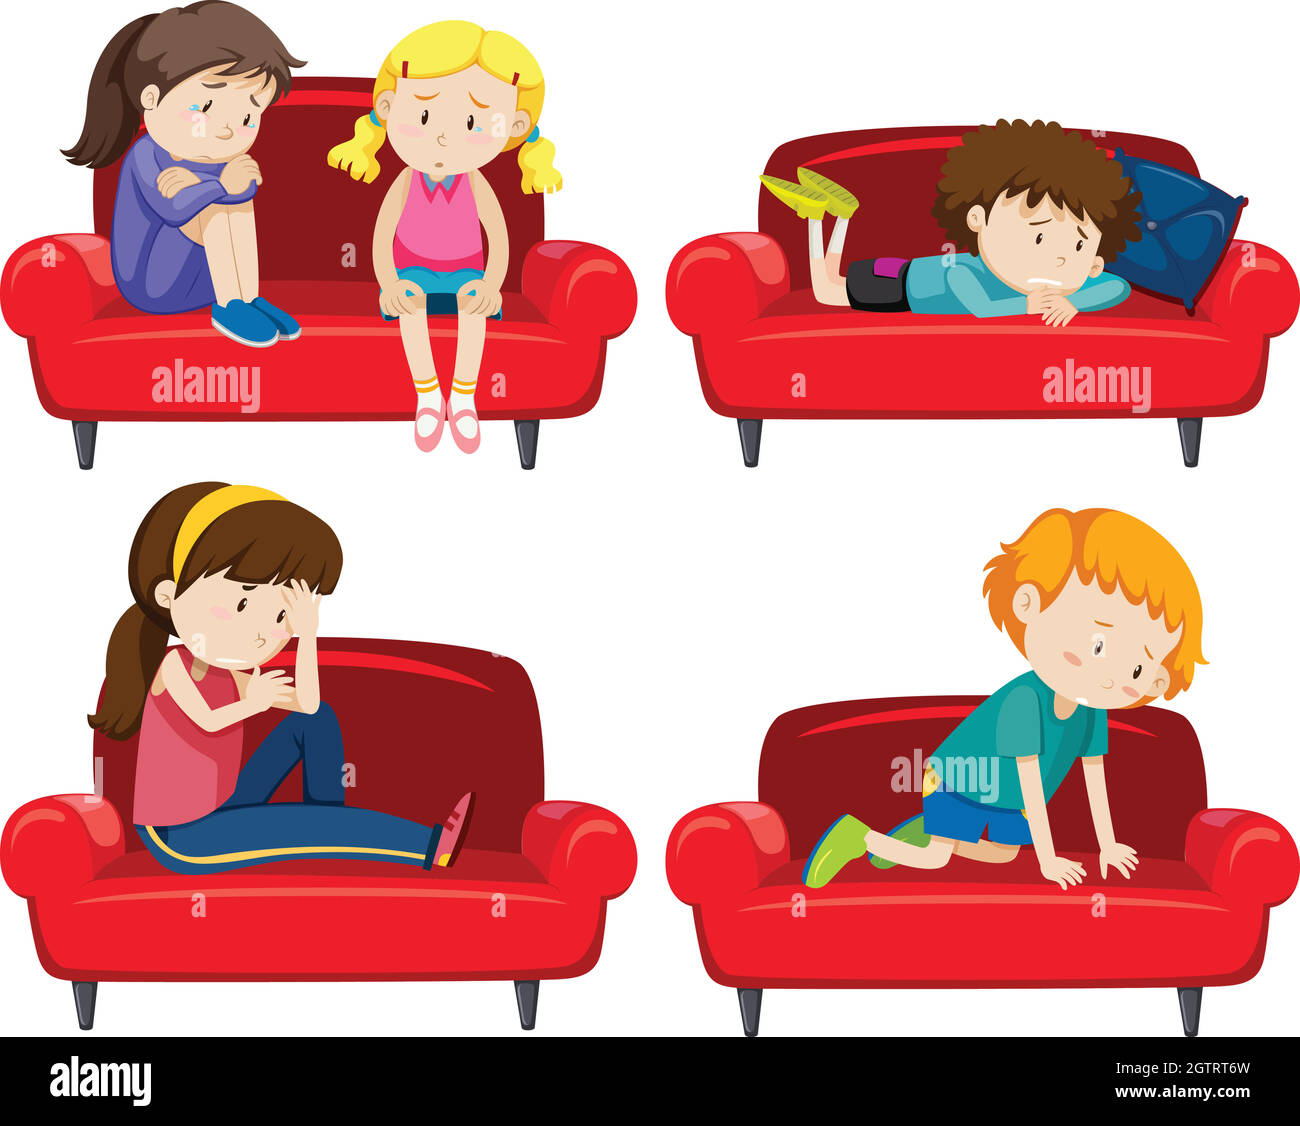 Set von deprimierten Kindern auf der Couch Stock Vektor